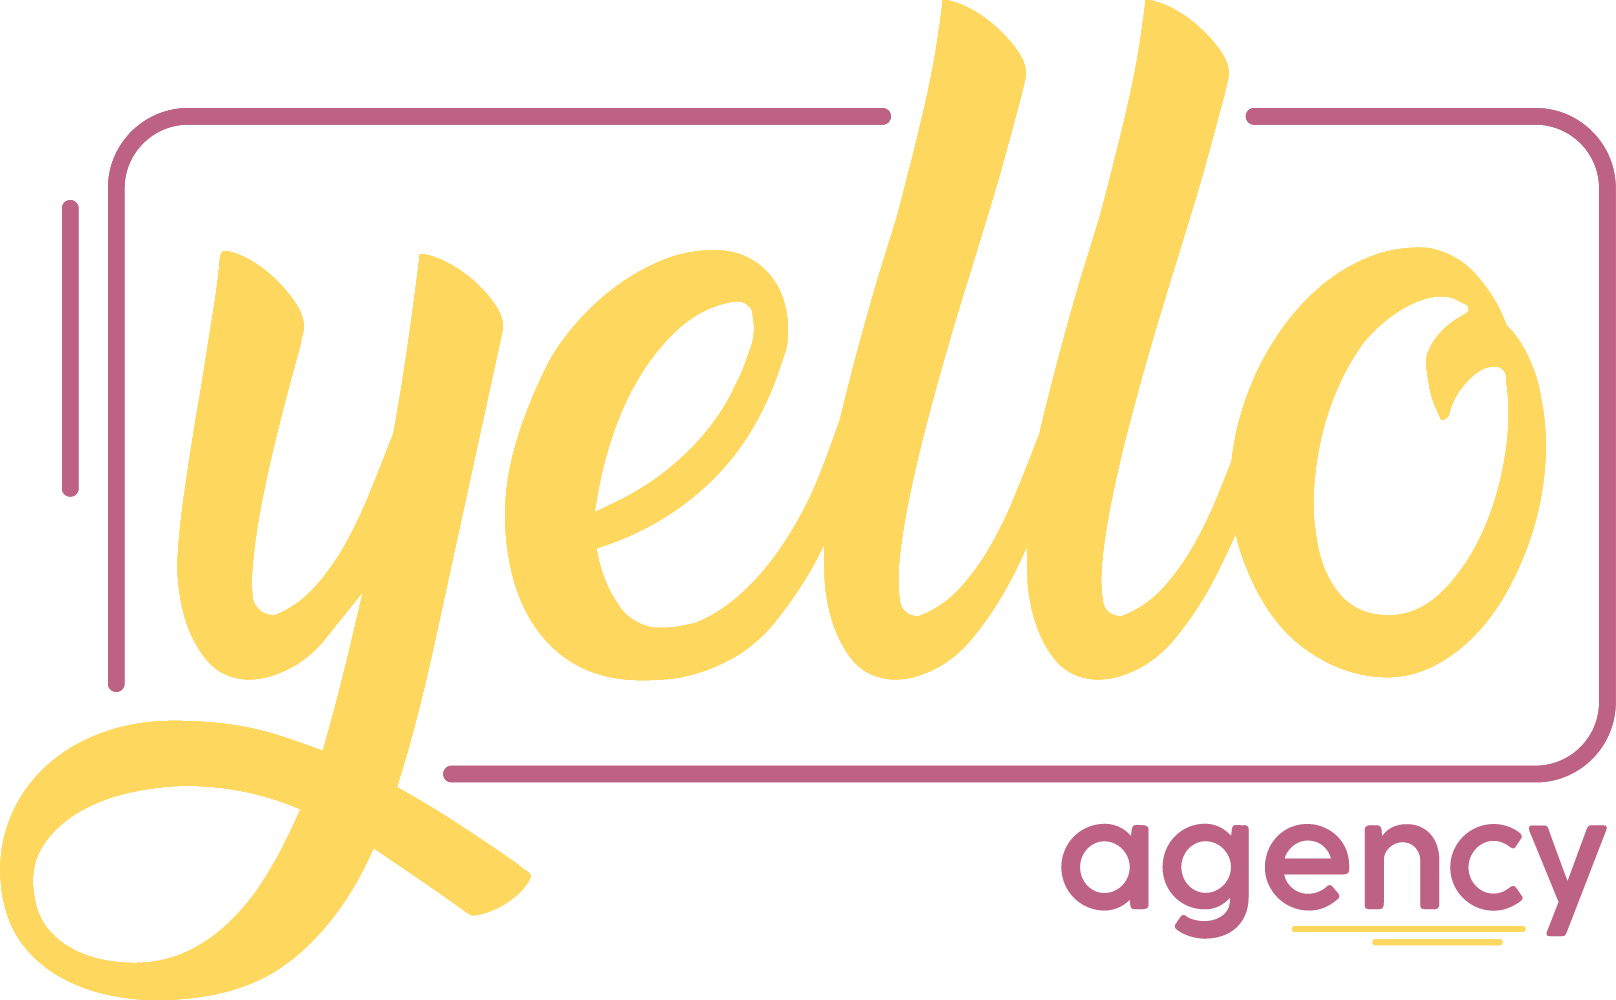 Yello Agency